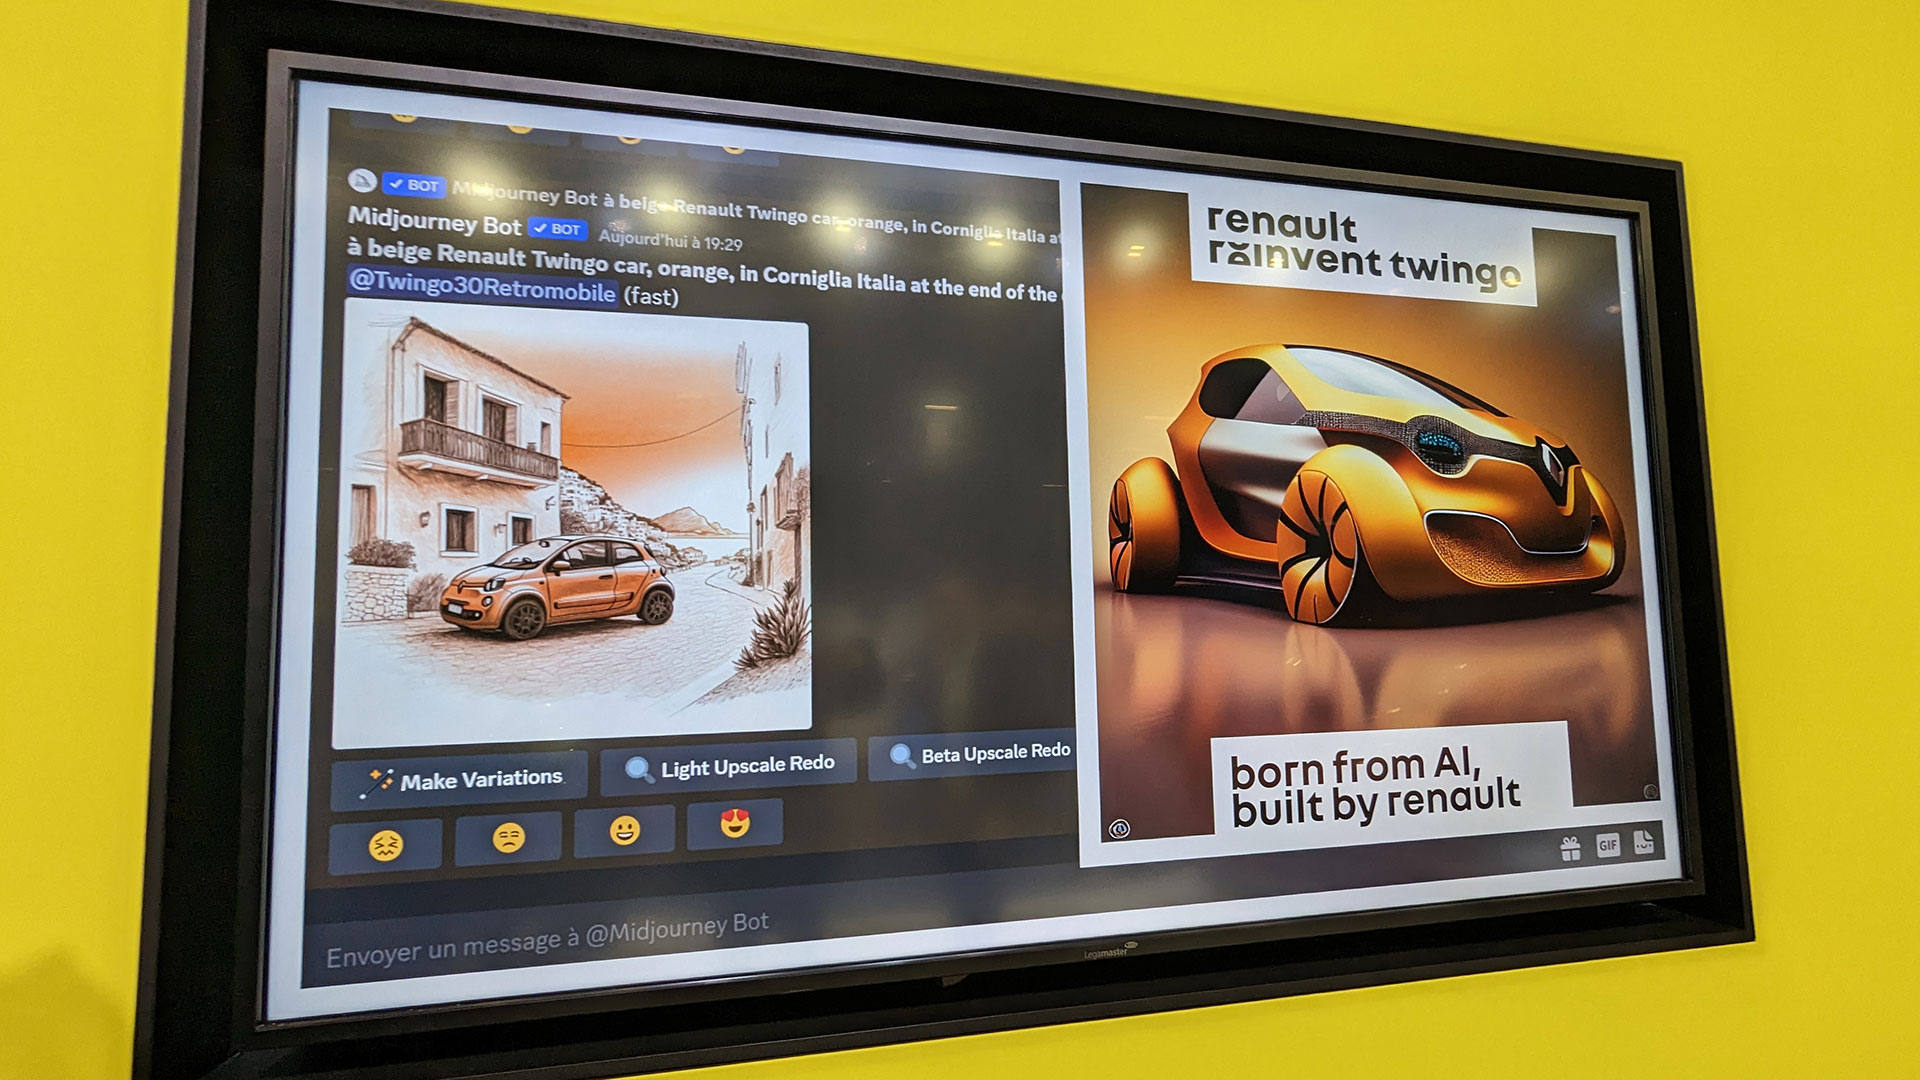 On a imaginé une improbable Renault Twingo à l'aide d'une IA et c’est une catastrophe